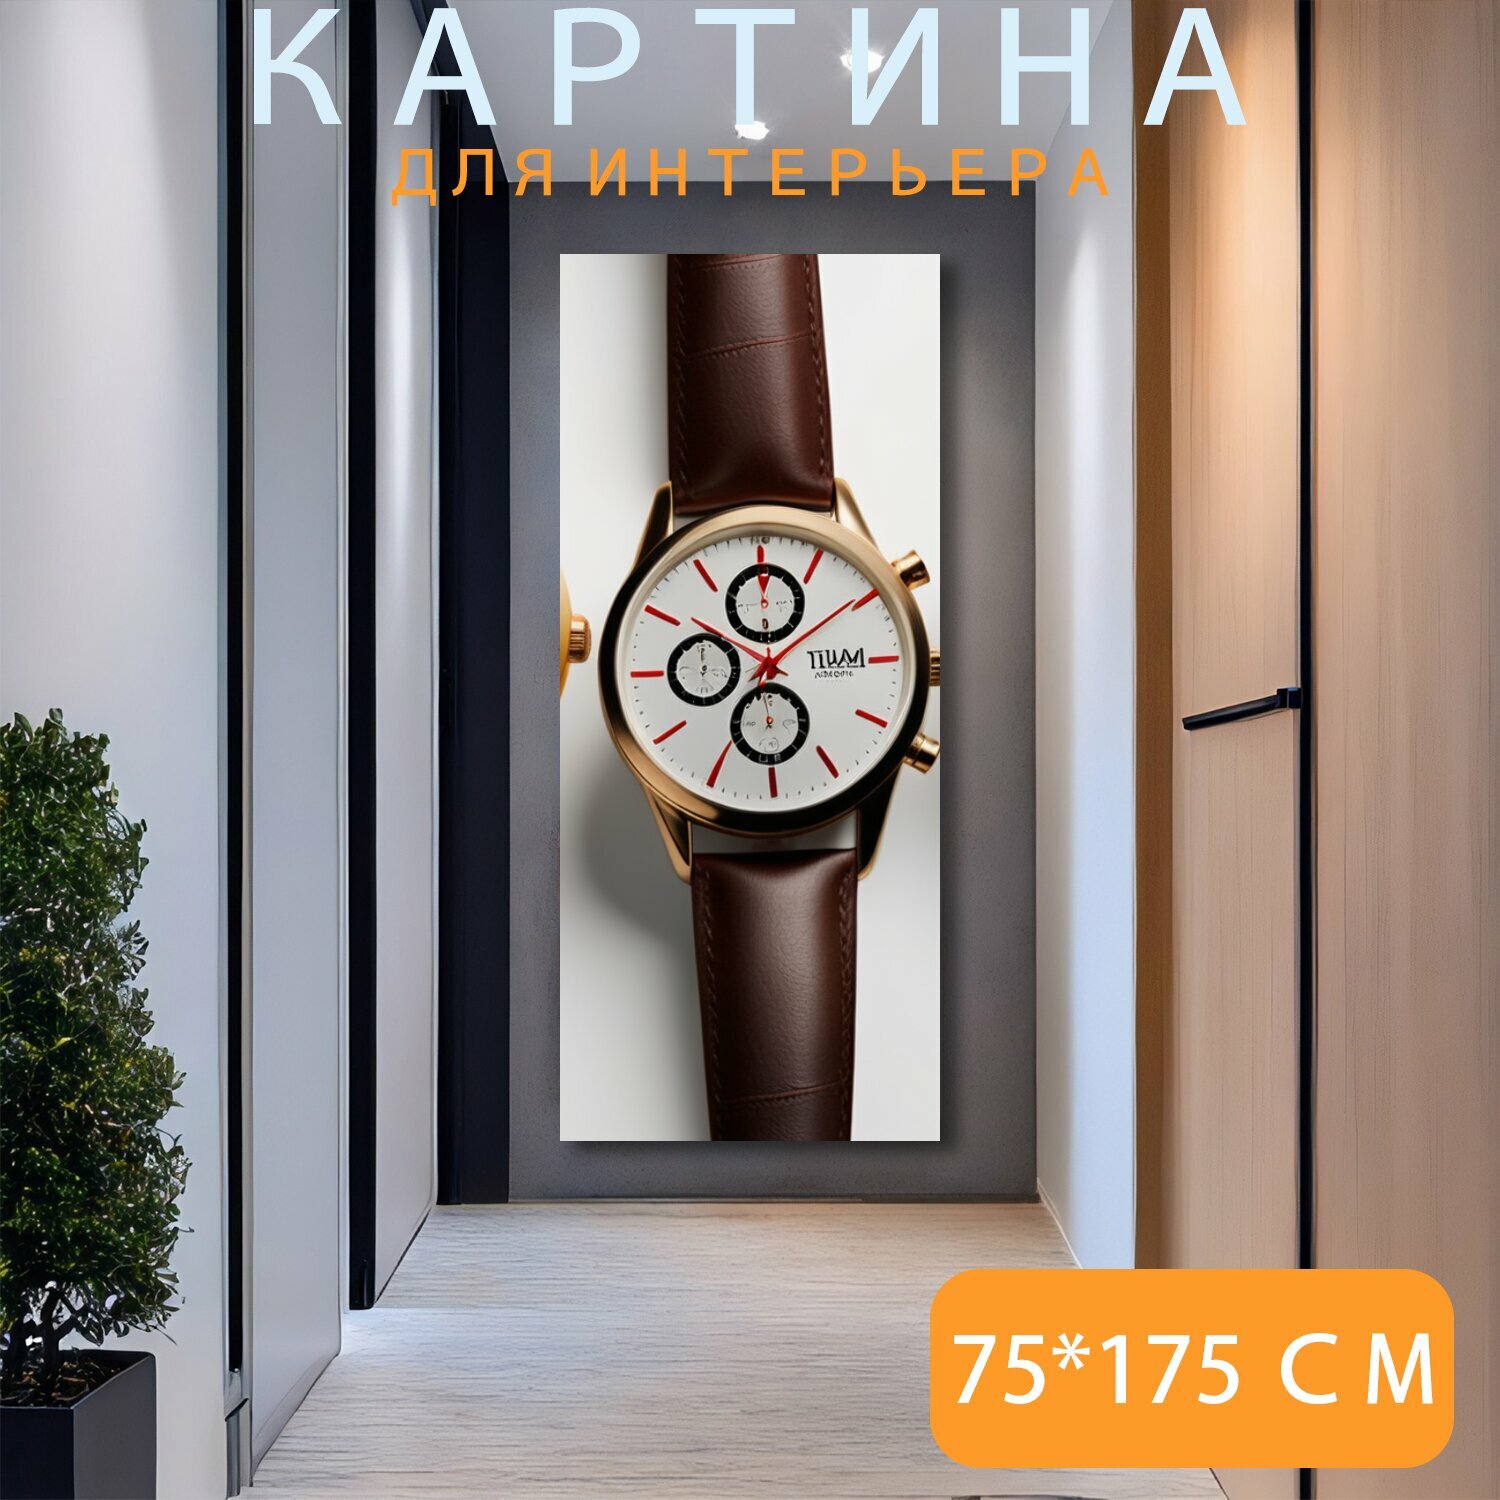 Картина на холсте любителям часов "Стильные украшения, часы, современные" на подрамнике 120х75 см. для интерьера